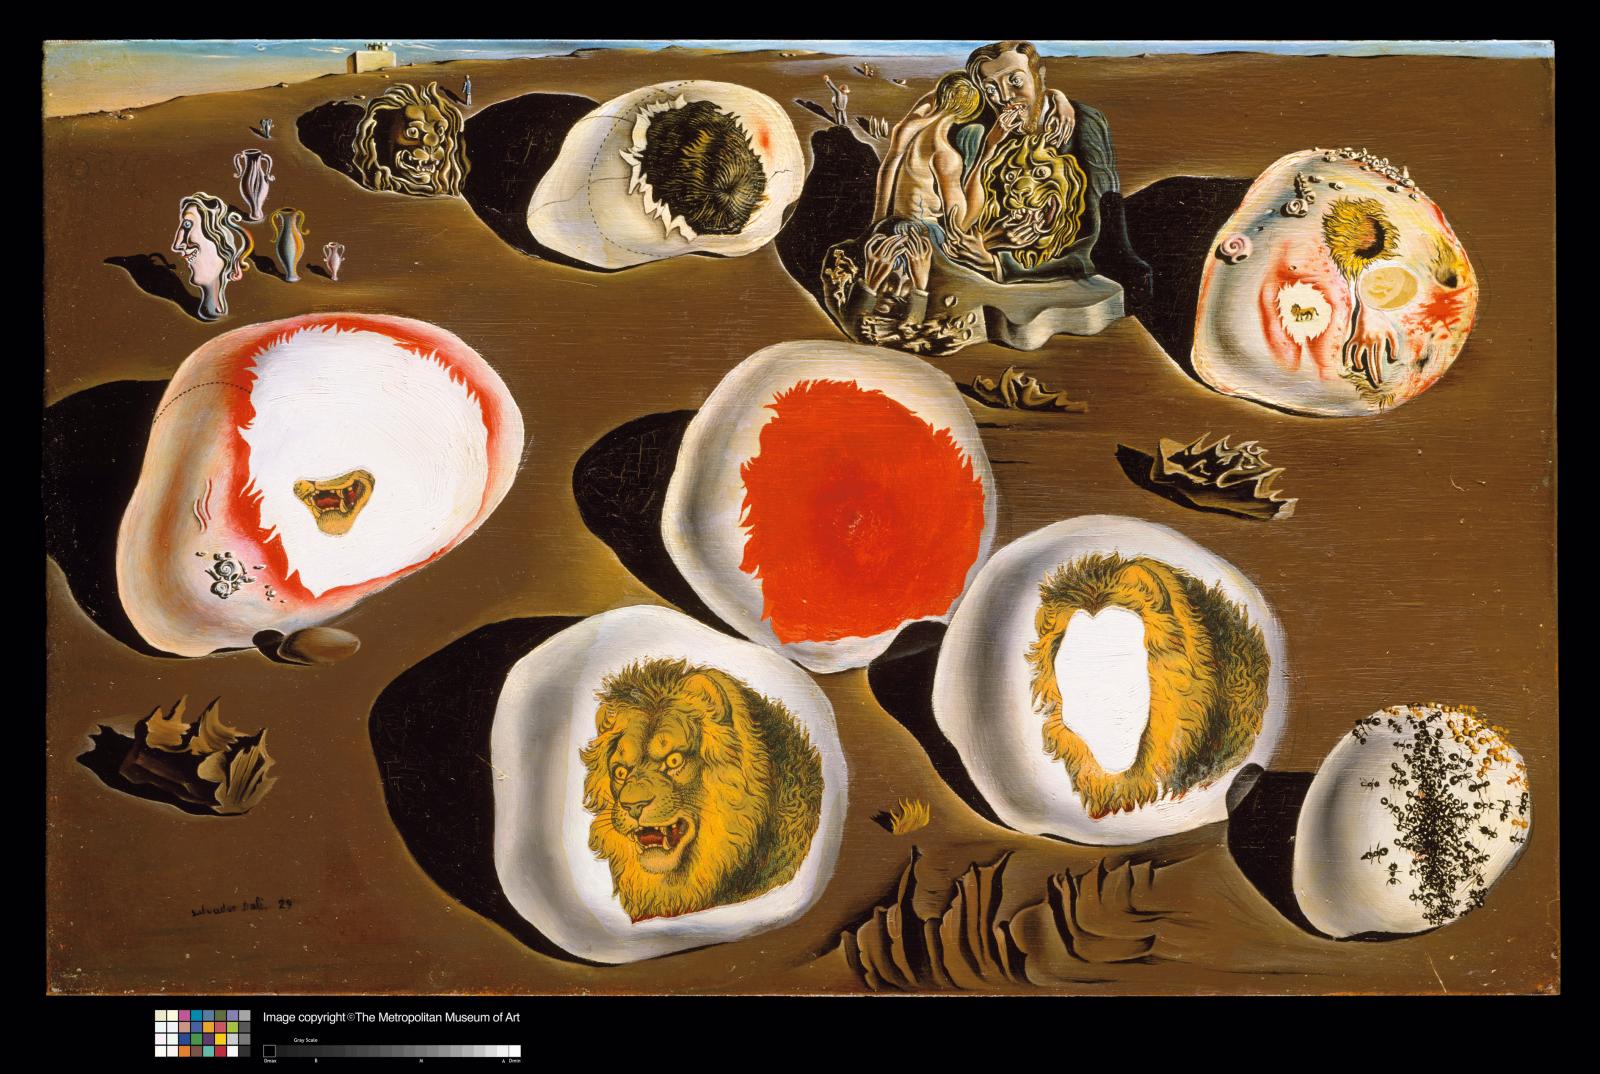 Dalí et Magritte aux Musées royaux des beaux-arts de Belgique